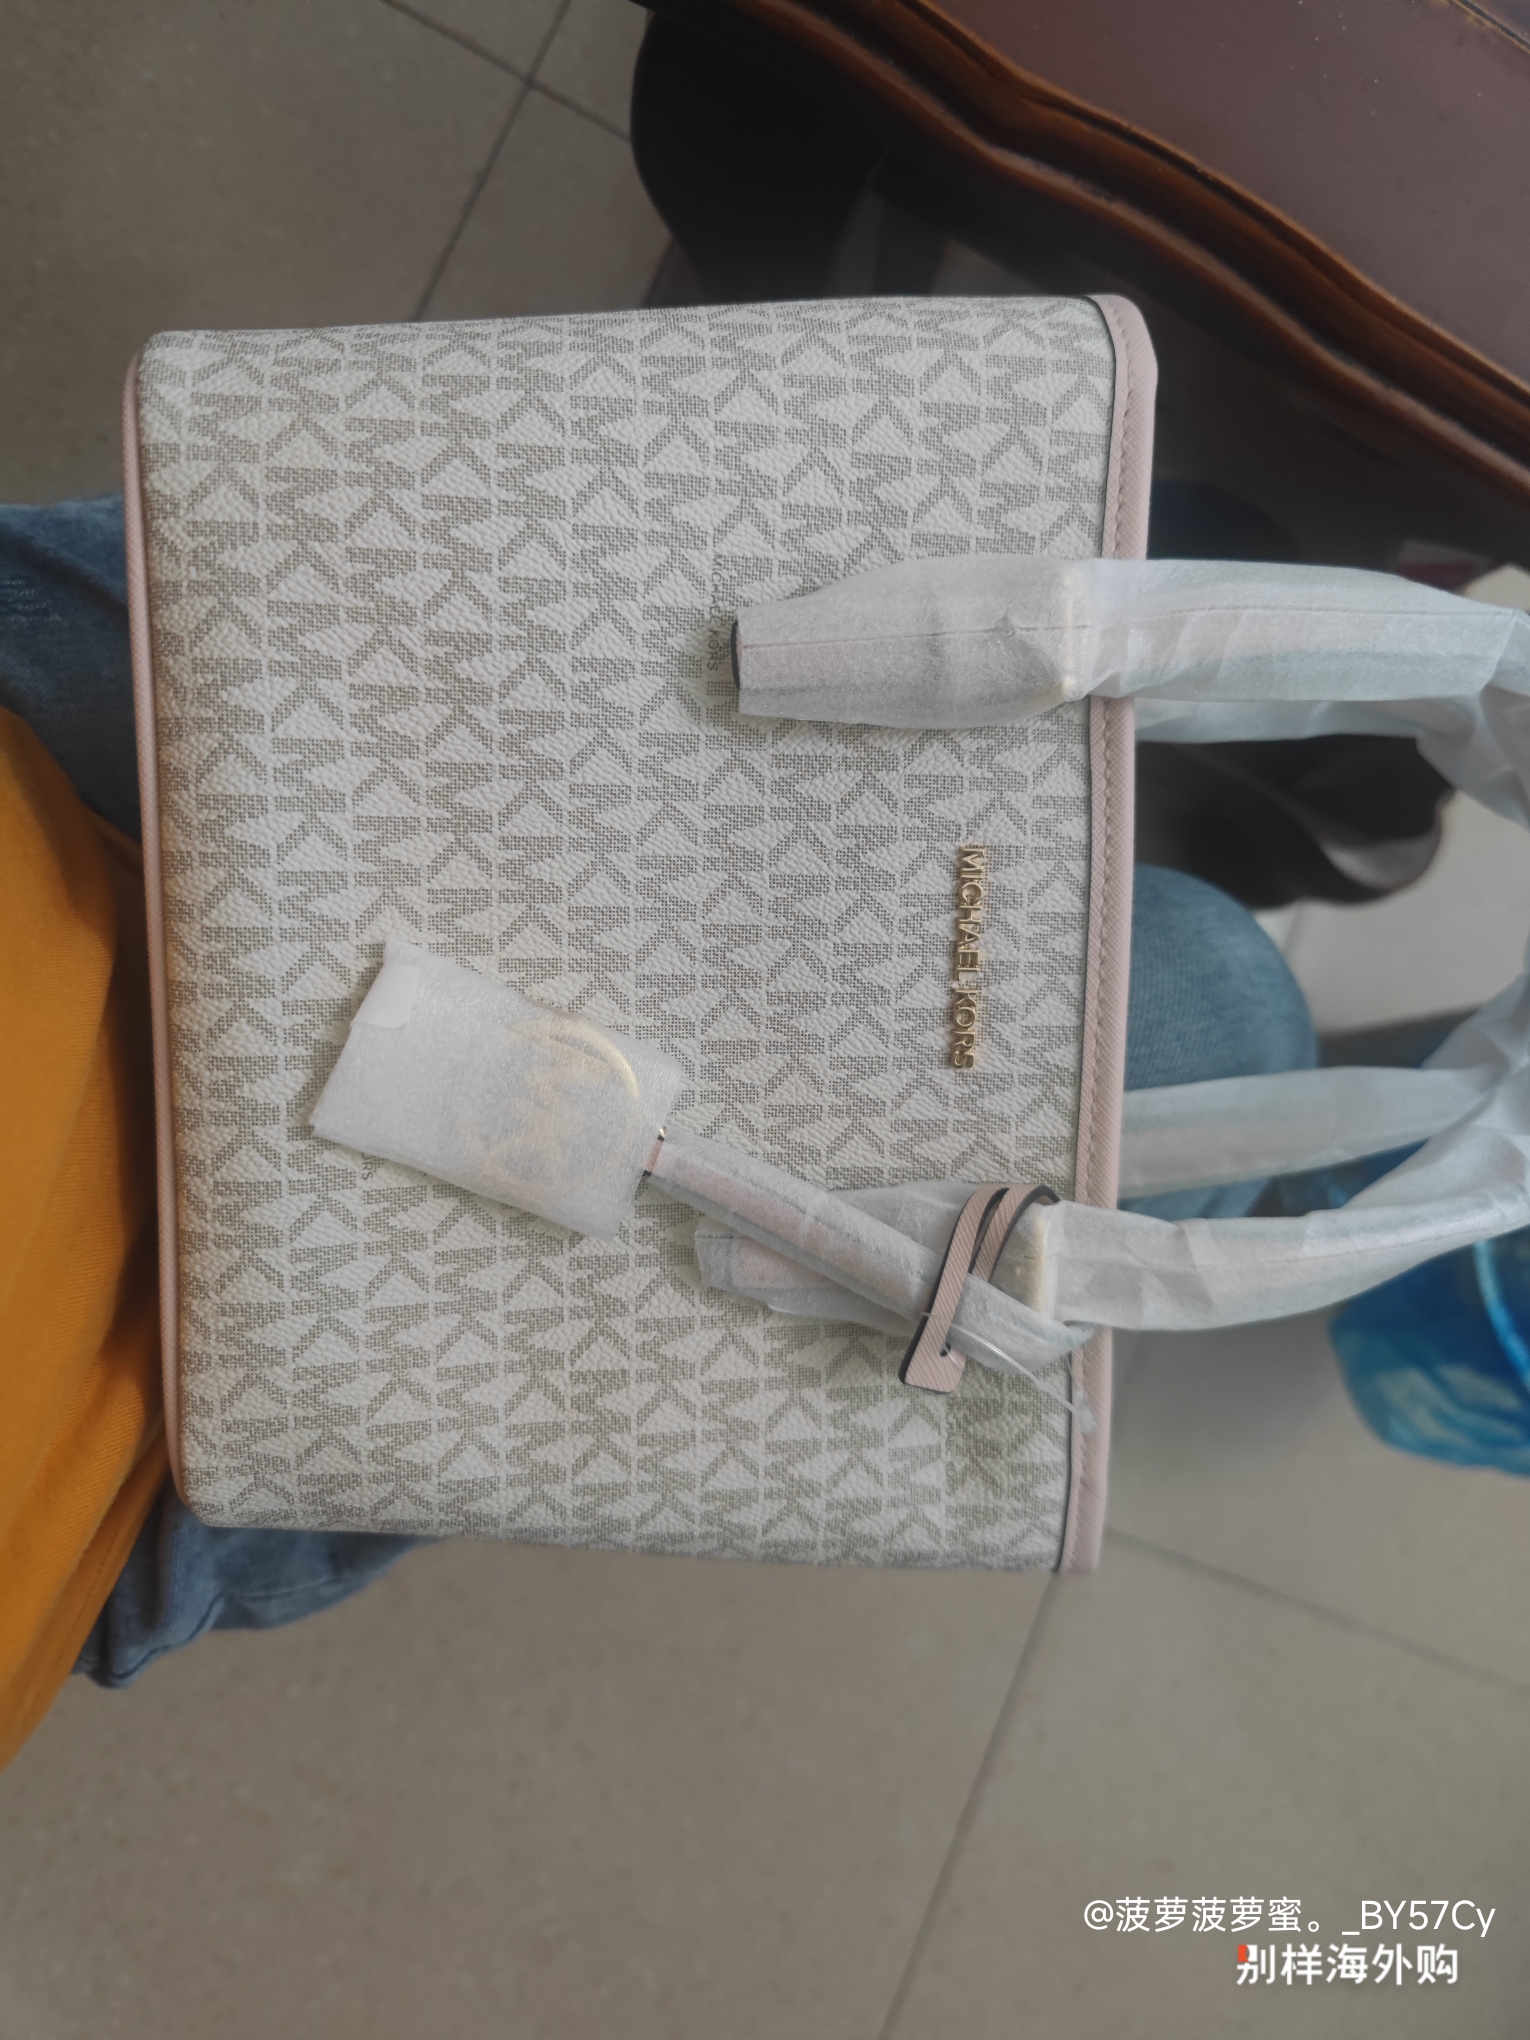 Le Pliage Xtra S Handbag Mahogany - Leather (L1512HDA204)